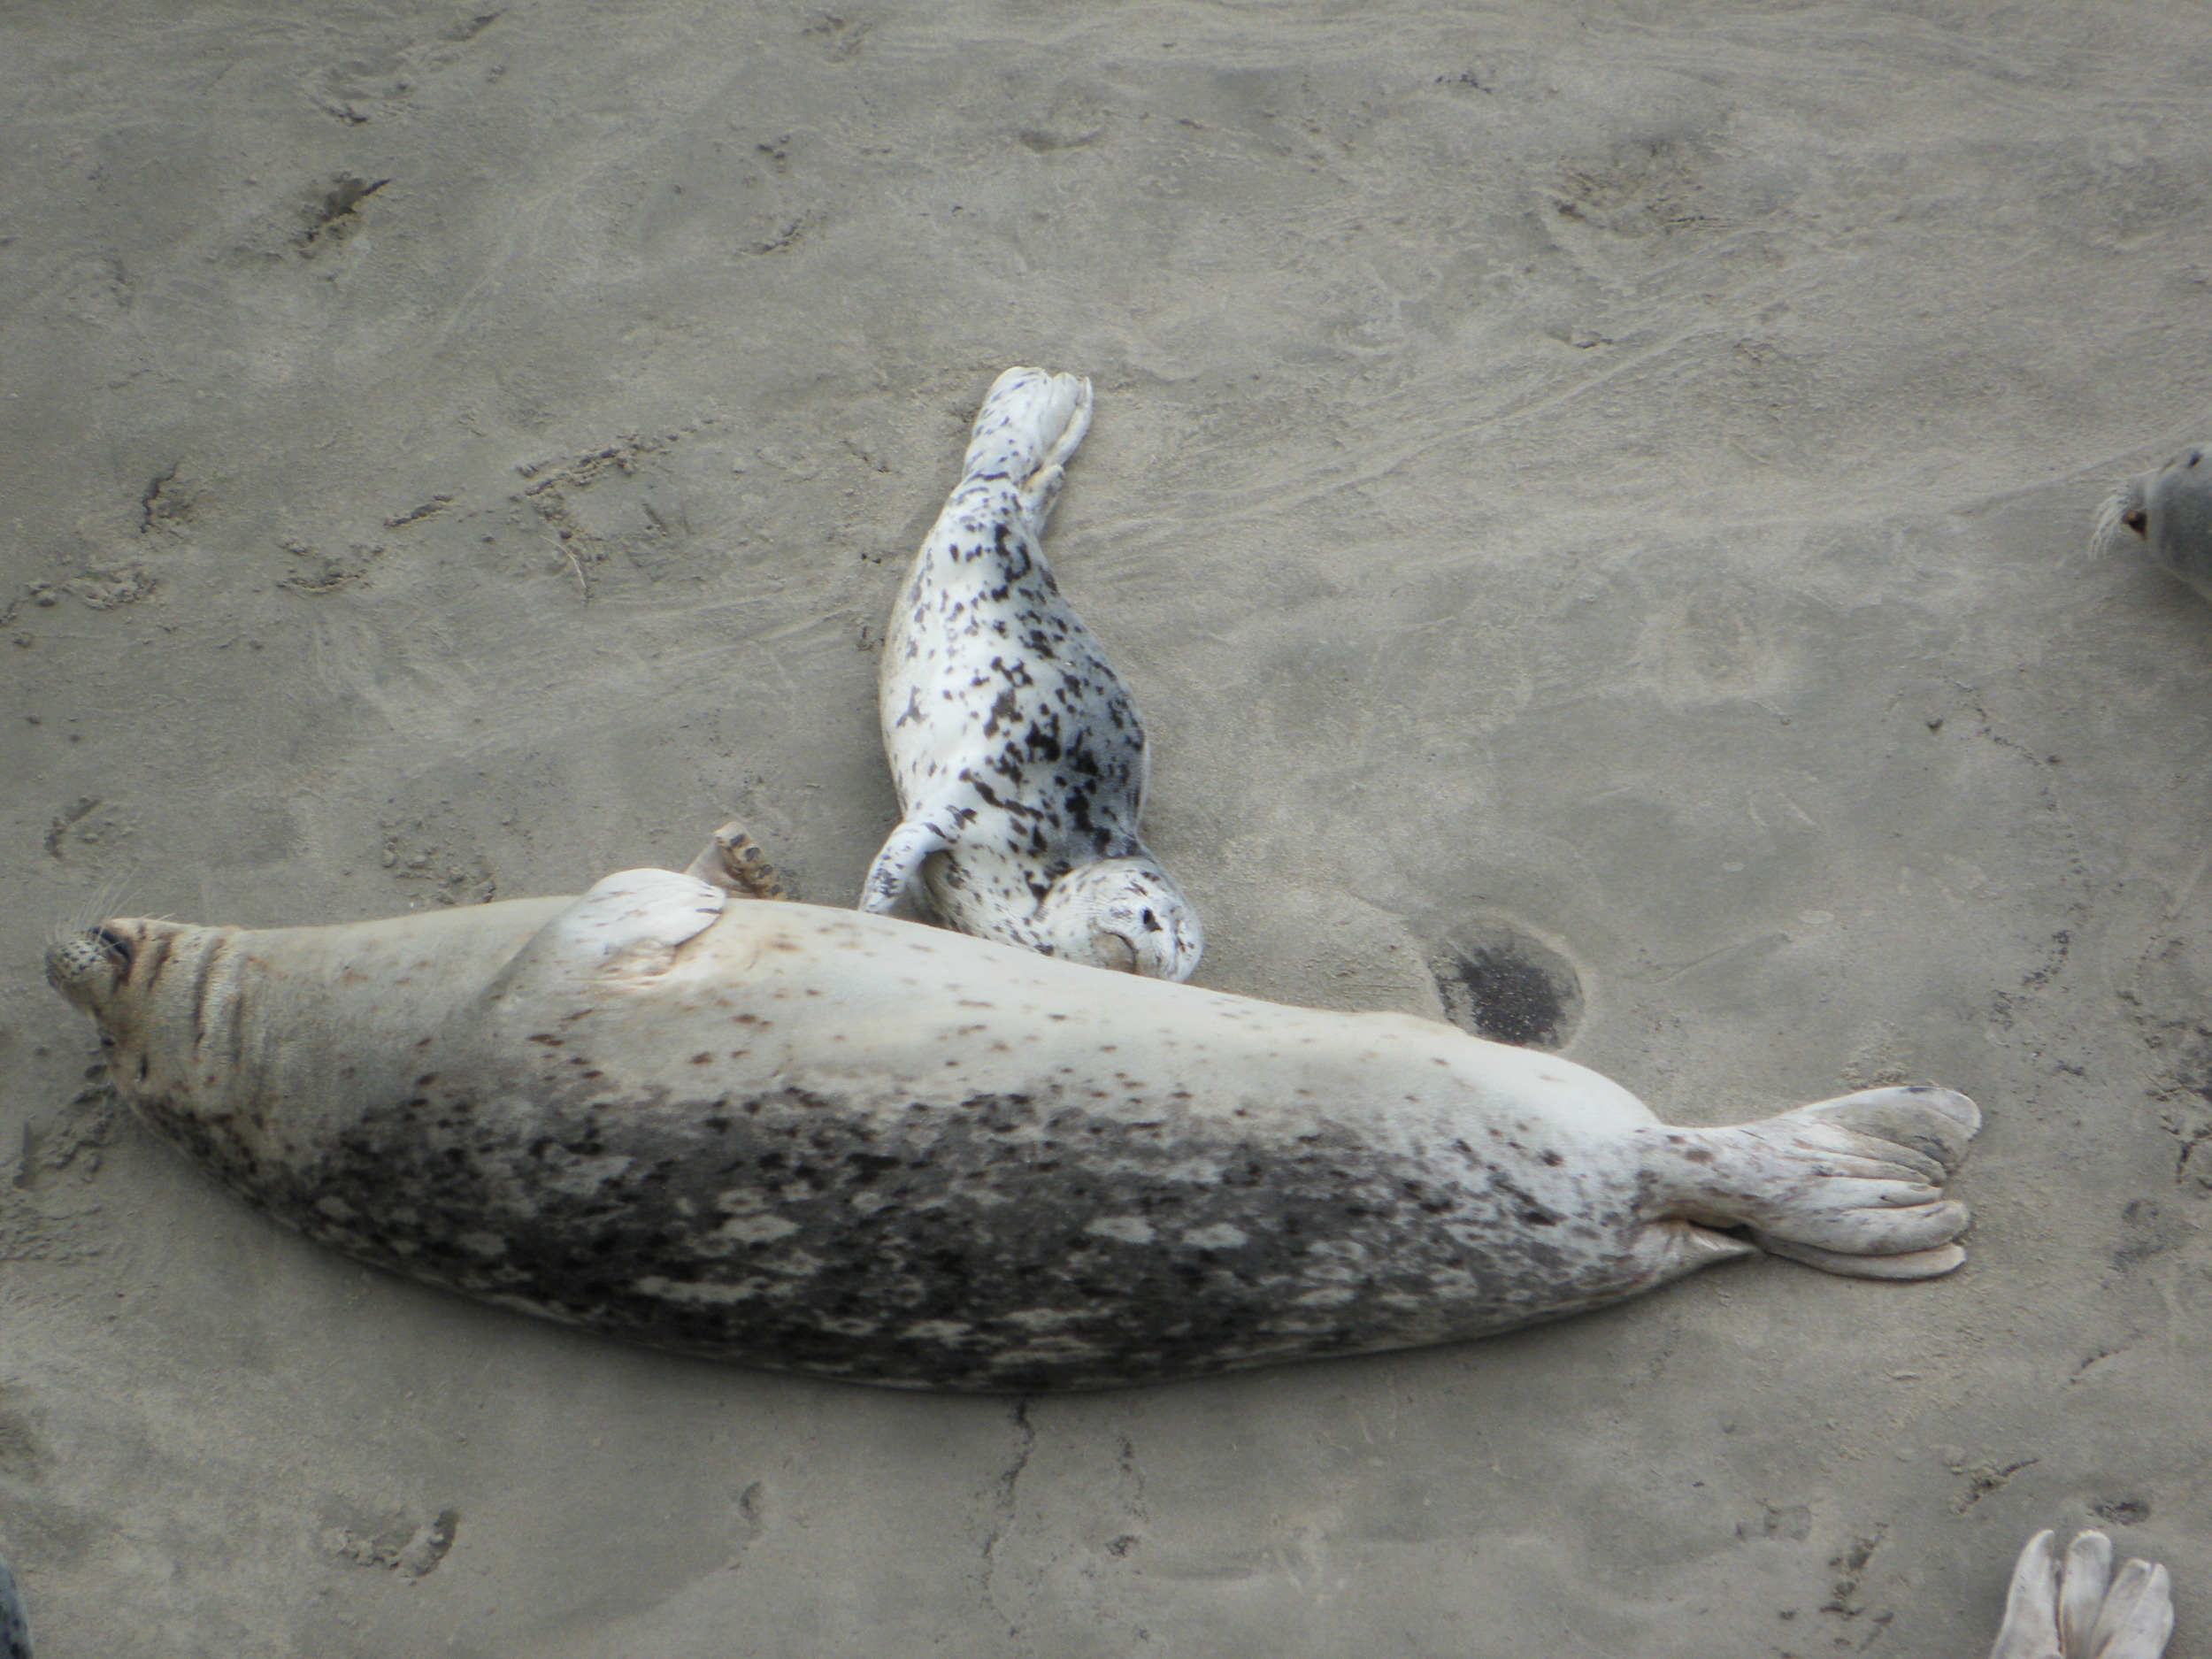 Nearby Alsea Bay Harbor Seals